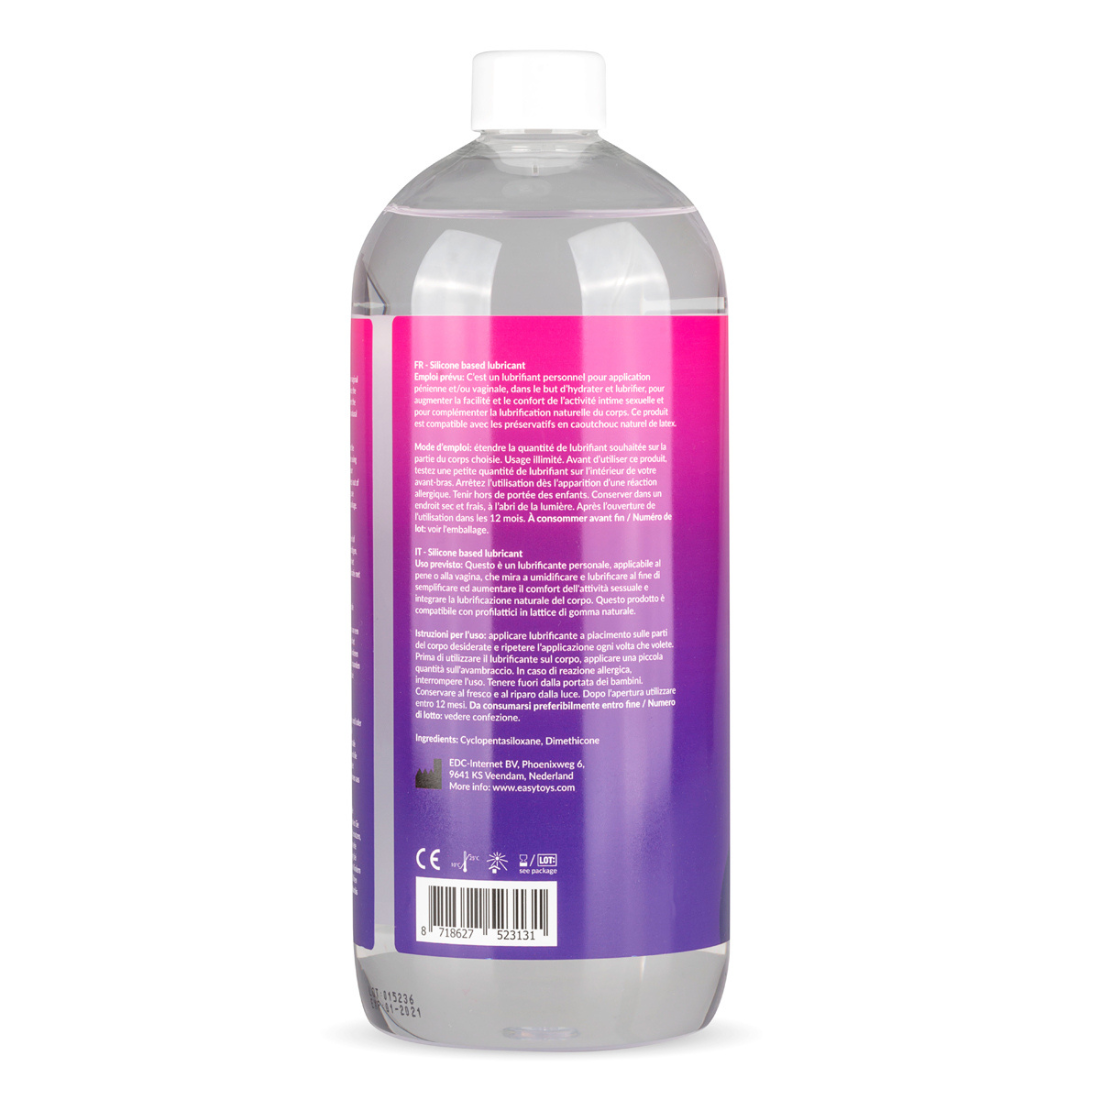 Grote fles (1000 ml) siliconen glijmiddel met doseerpompje van het merk EasyGlide. Perfect voor gay mannen en te koop bij Flavourez.